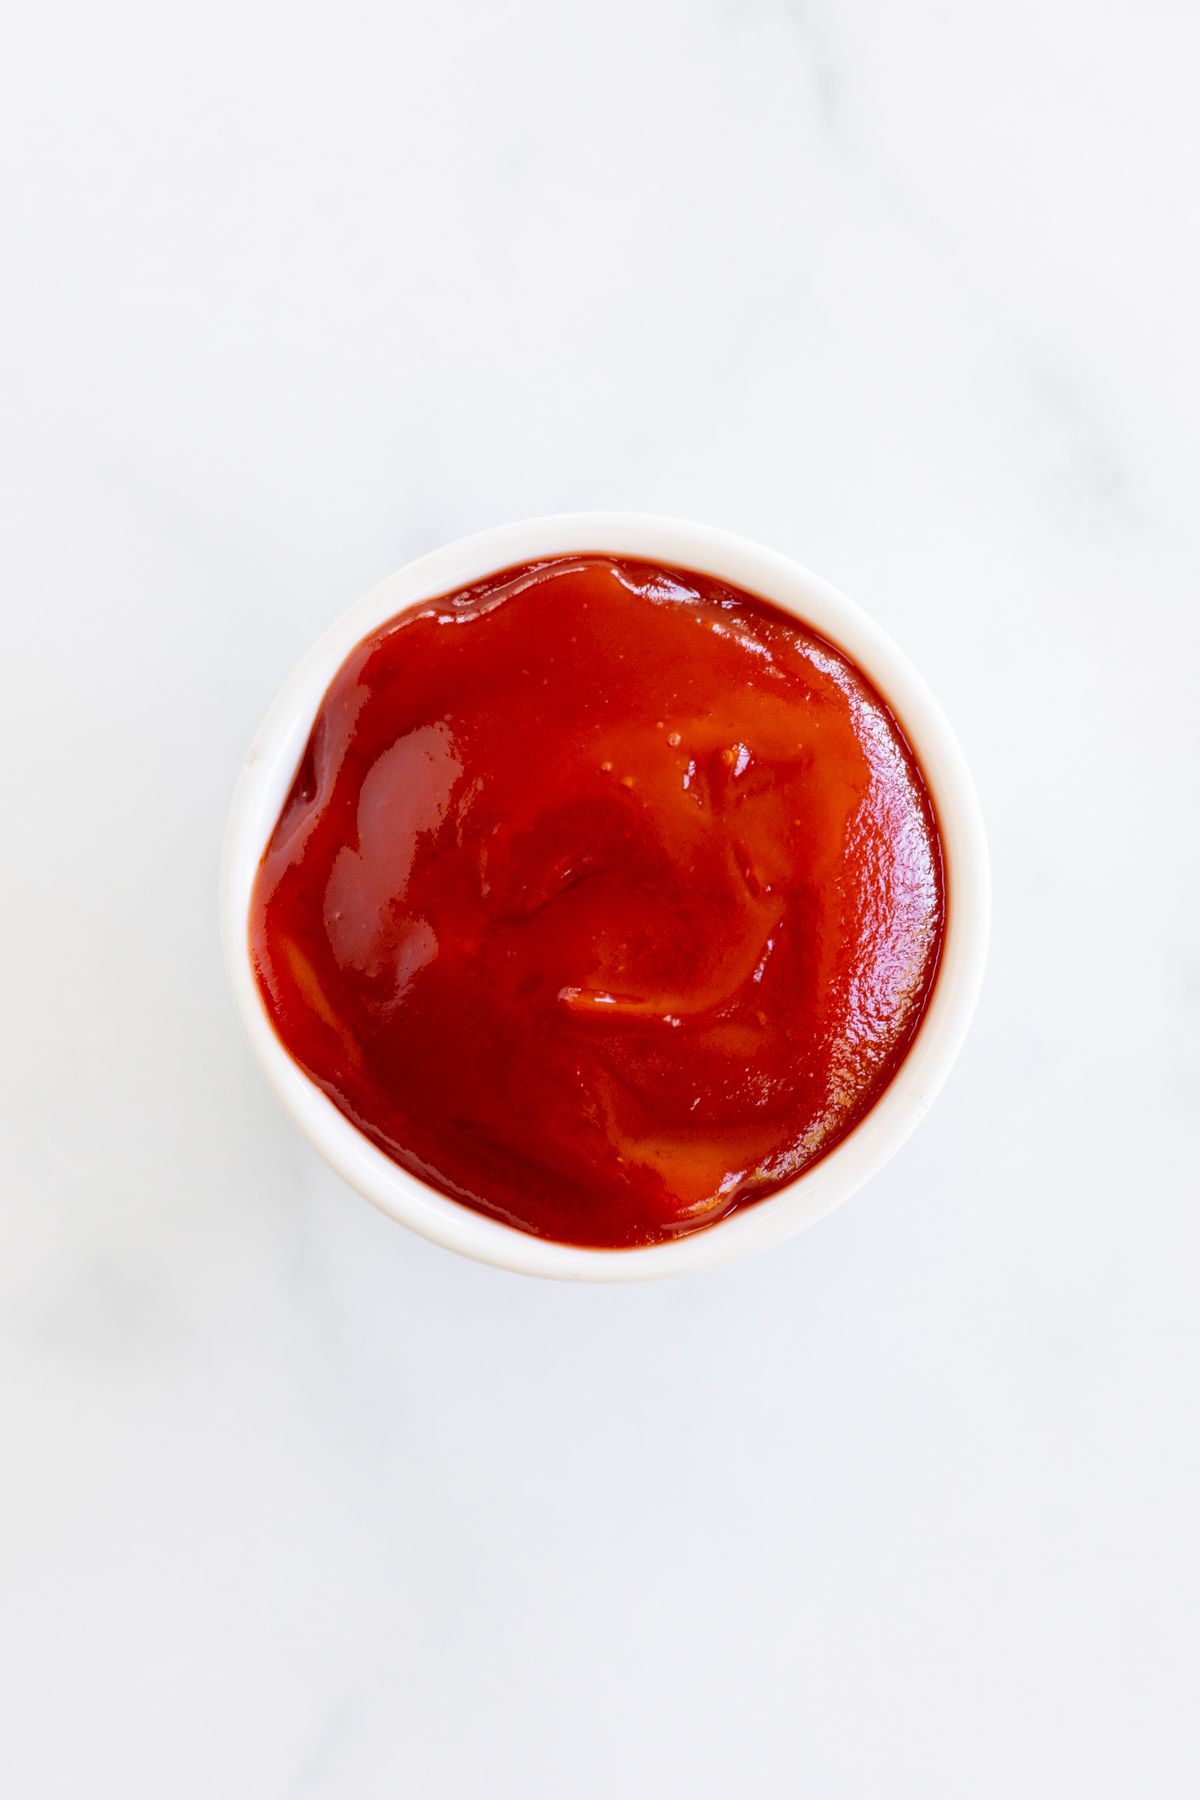 대리석 조리대 위의 작은 케첩 그릇, 이미지는 토마토 페이스트 대체품에 대한 가이드에 나와 있습니다.